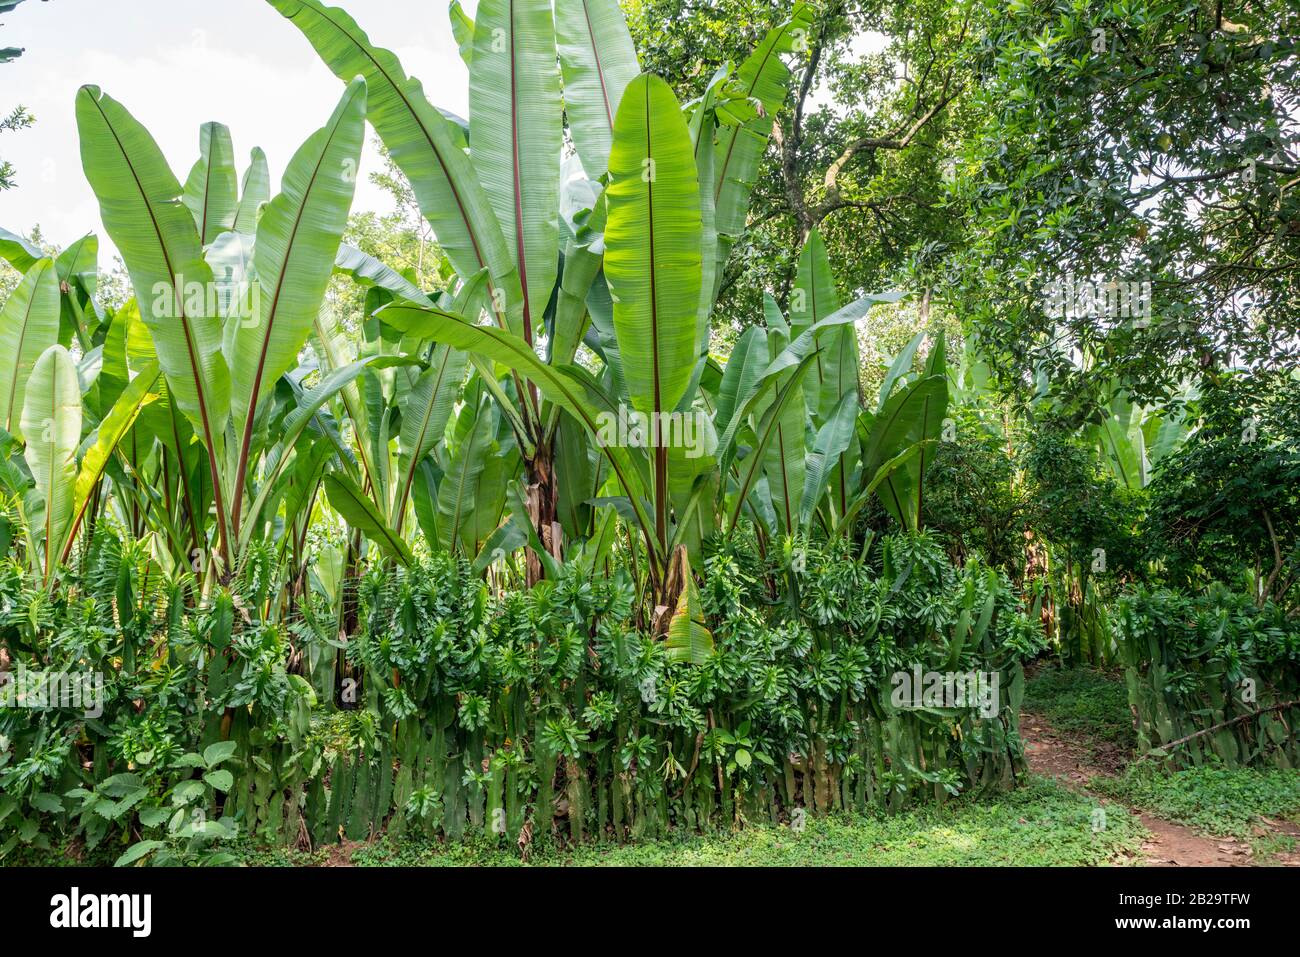 Enset plant, also known as false banana or Ethiopian banana plant, in southern Ethiopia Stock Photo